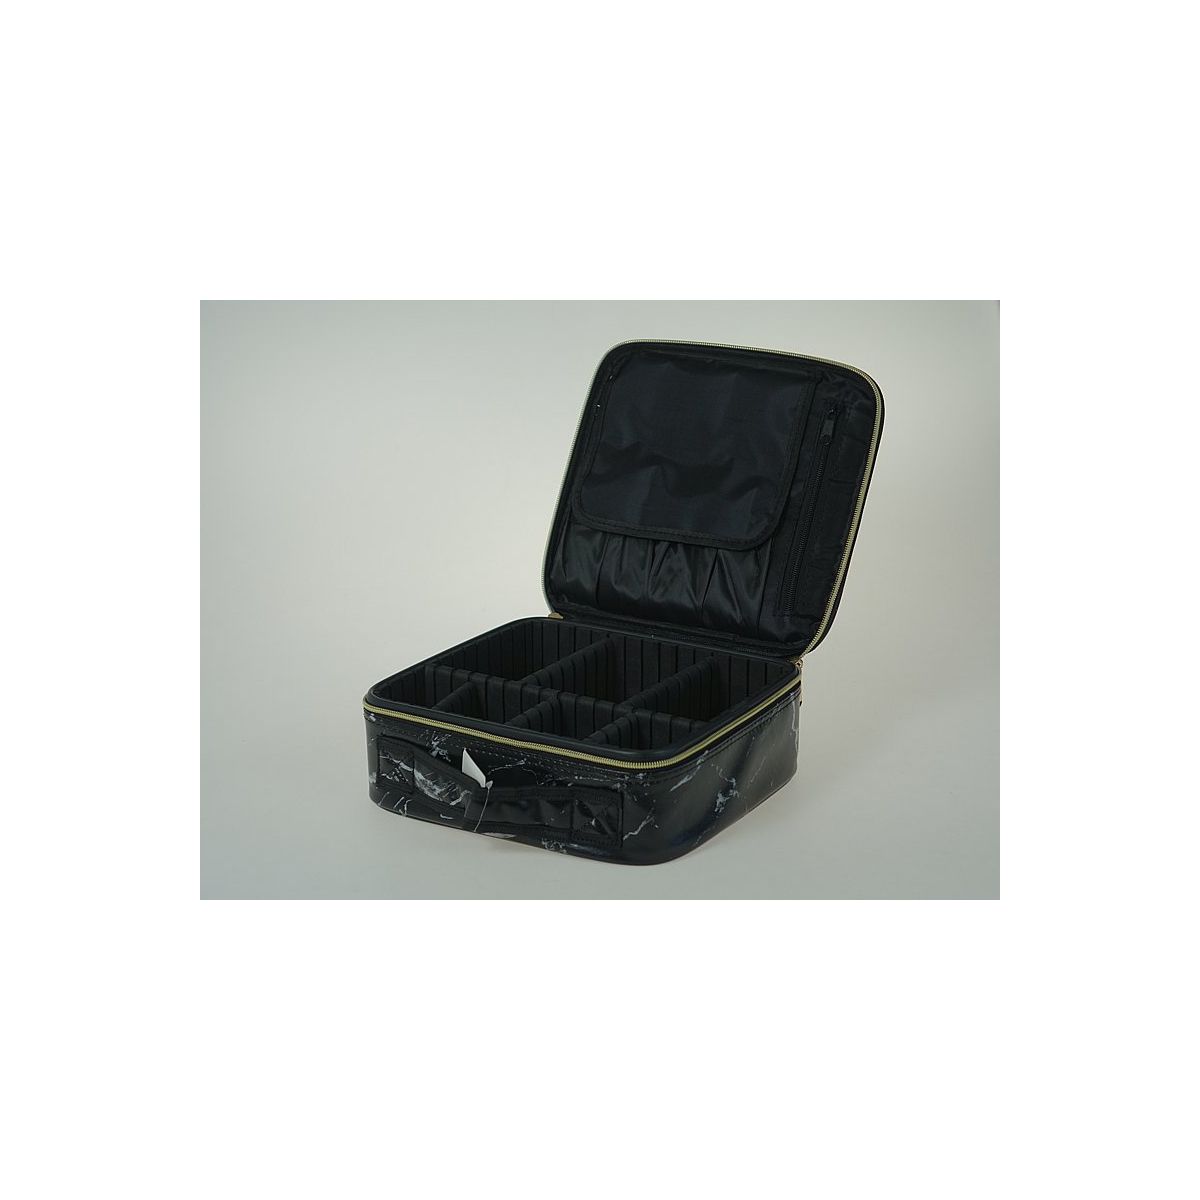 Kuferek walizka na kosmetyki, zapinany na zamek, z wyjmowanymi przegródkami w środku Adar (577985)